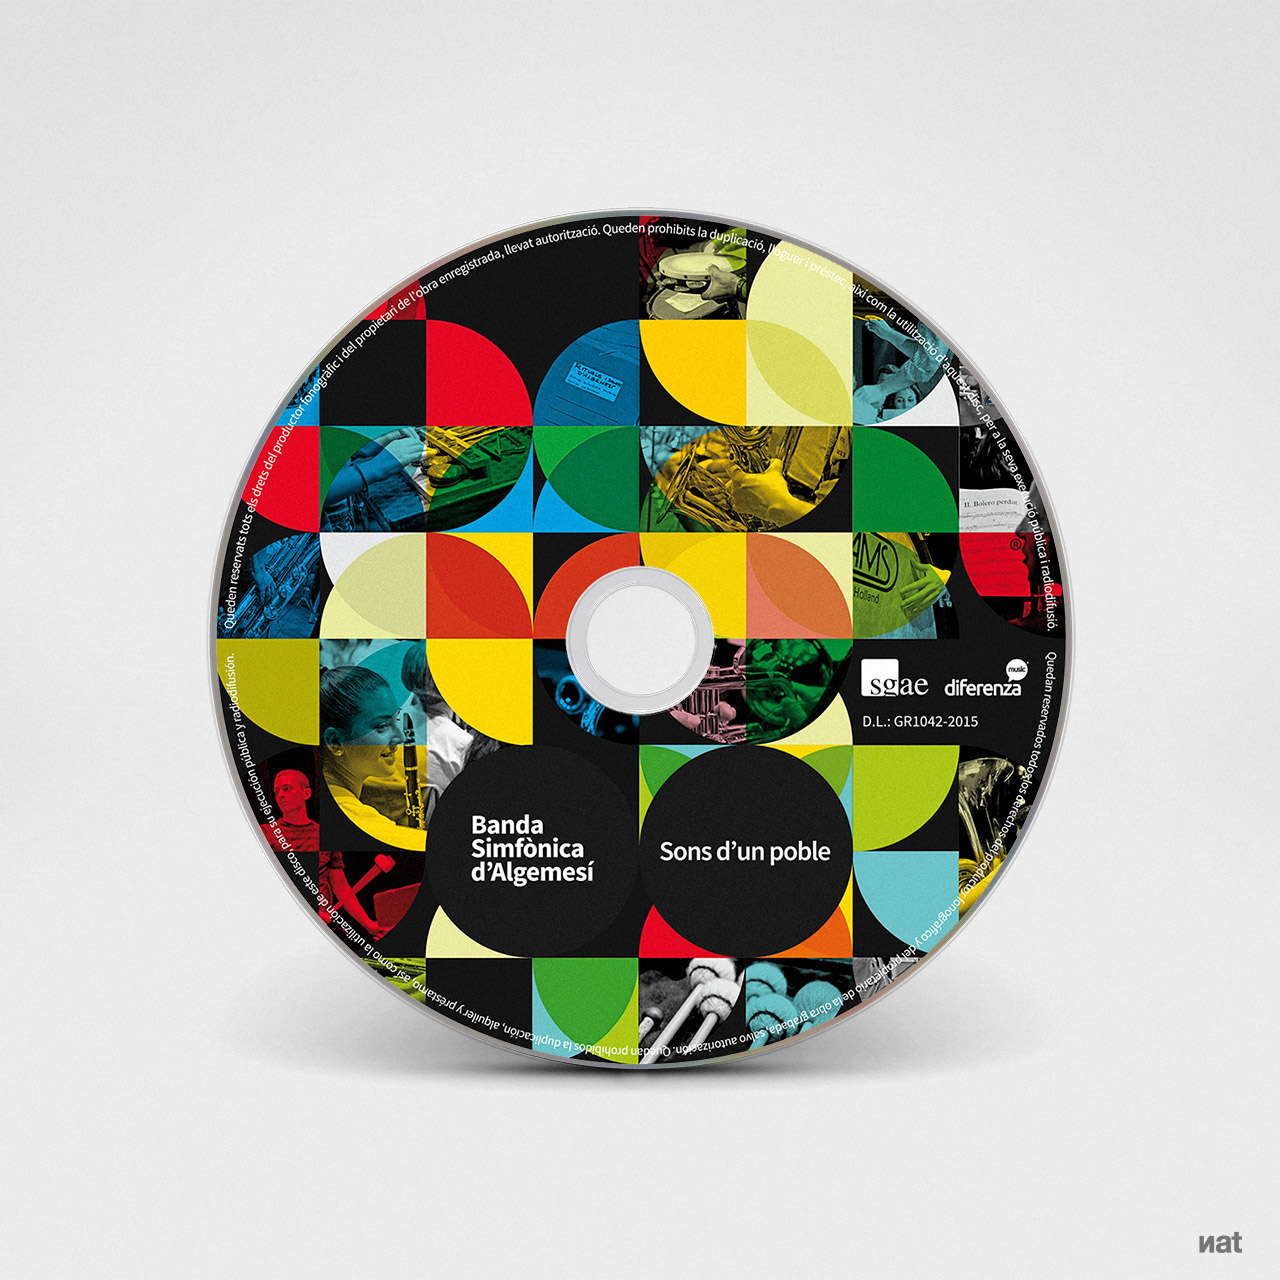 Diseño y fotografía para el disco CD 'Sons d'un poble' de la Banda Simfònica d'Algemesí. Diseño y fotografía de Nat Estudi.